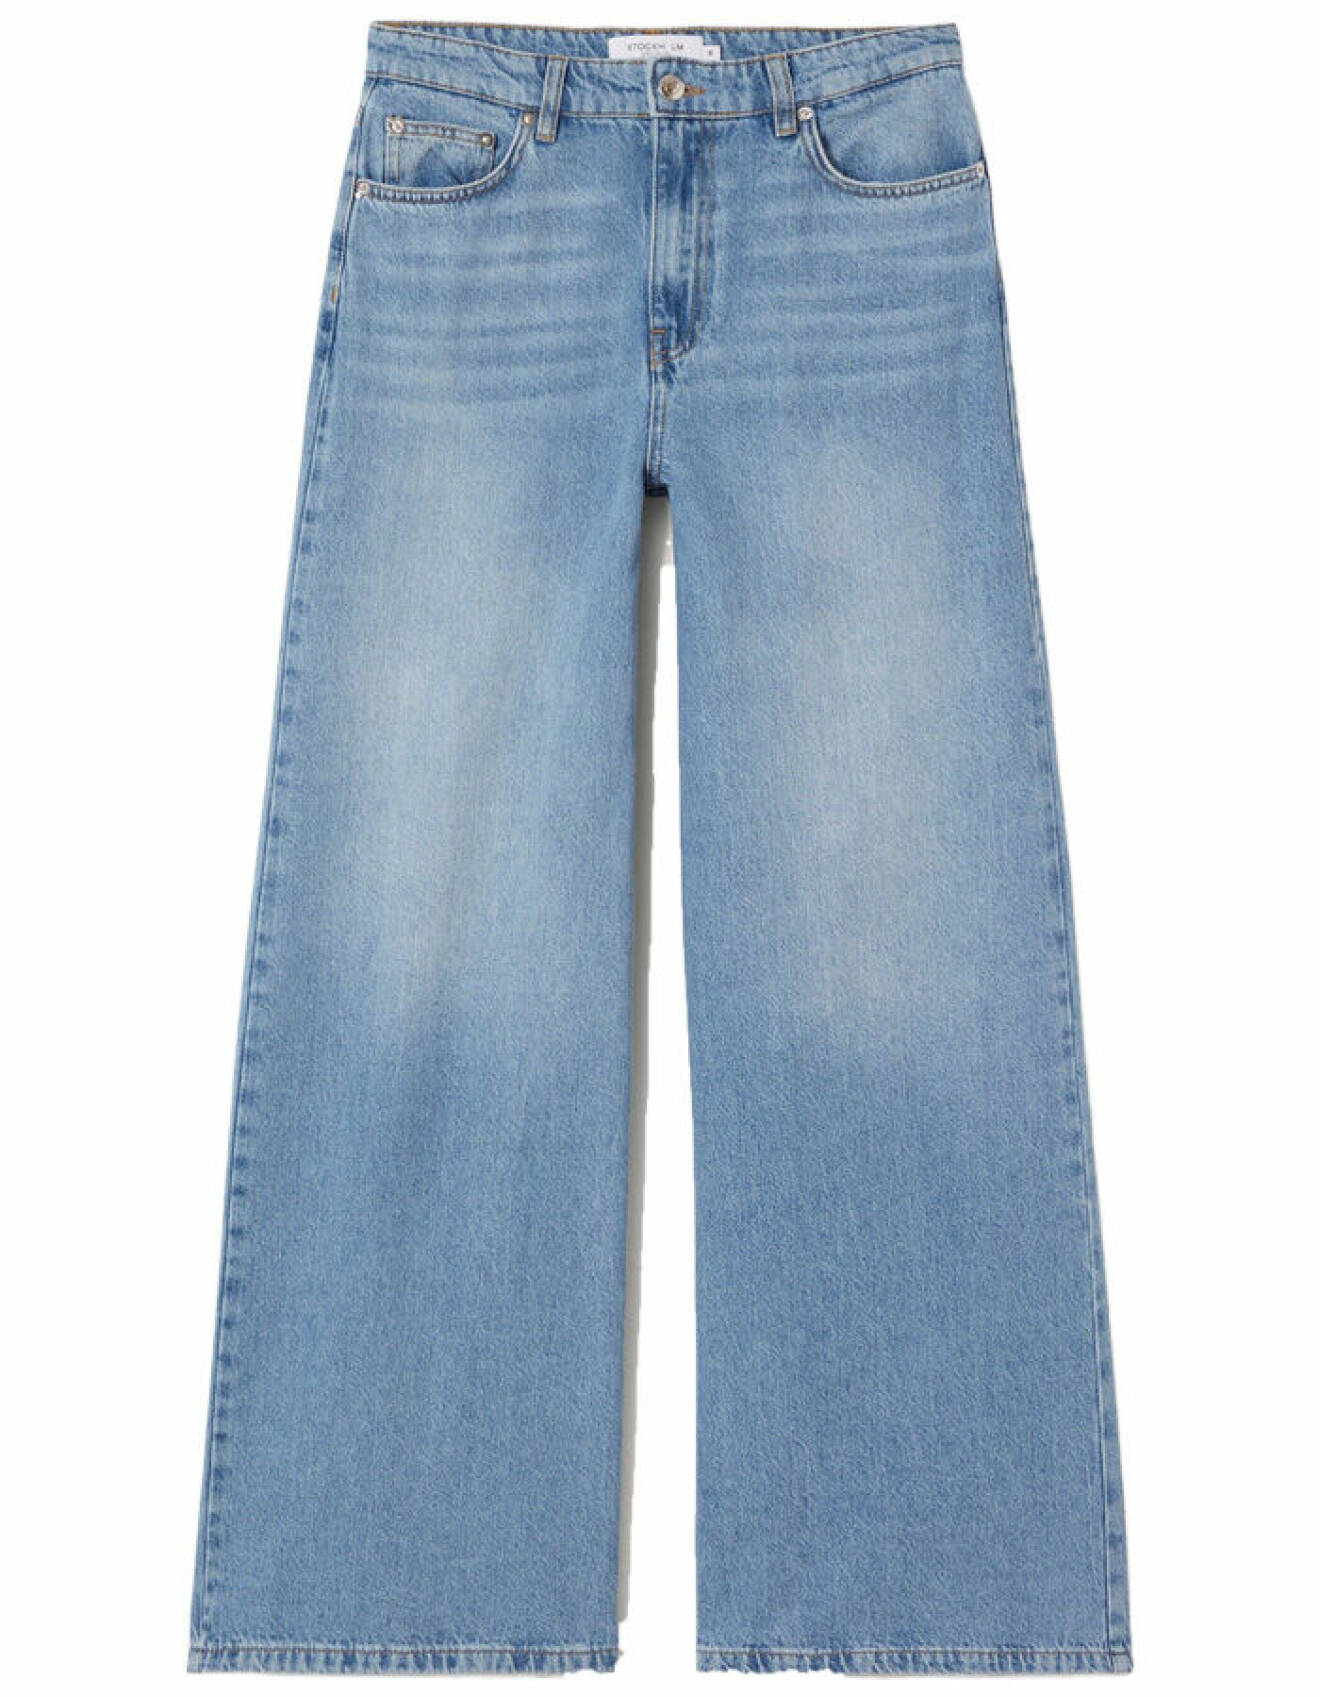 vida långa jeans för dam från mq